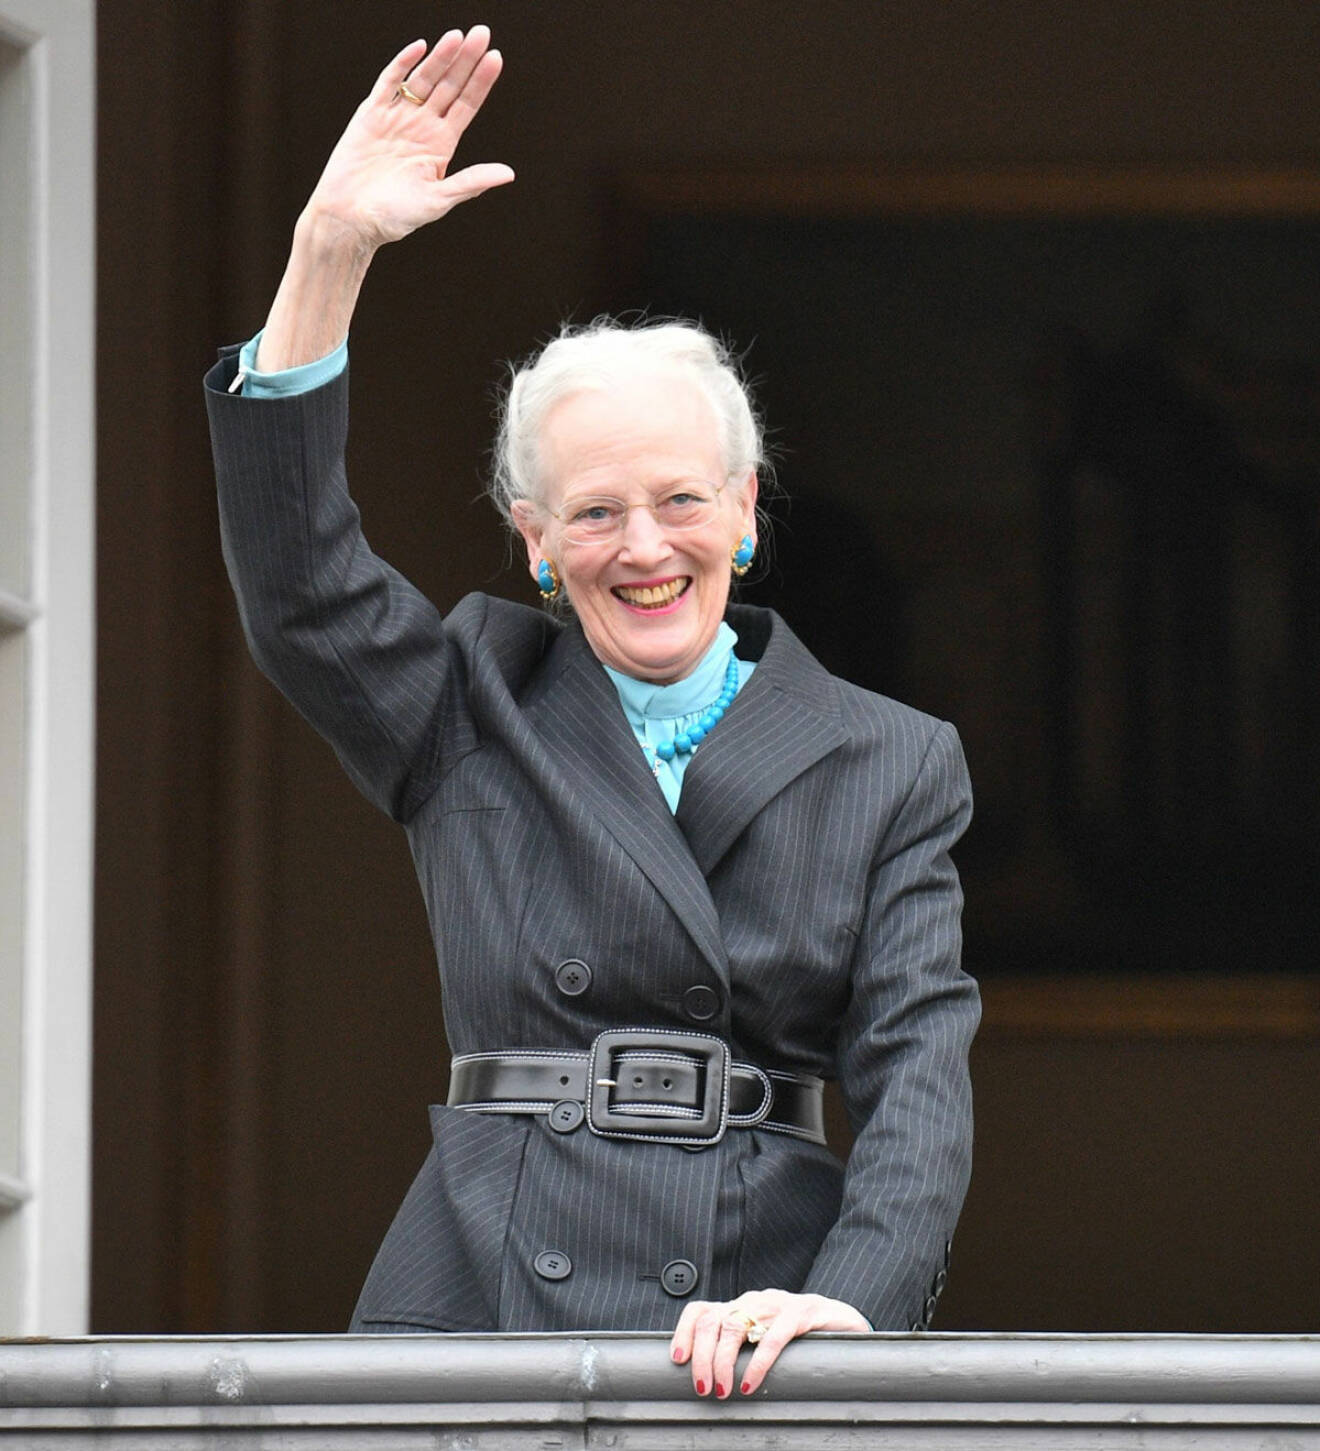 Drottning Margrethe var klädd i grått och turkost denna födelsedag.